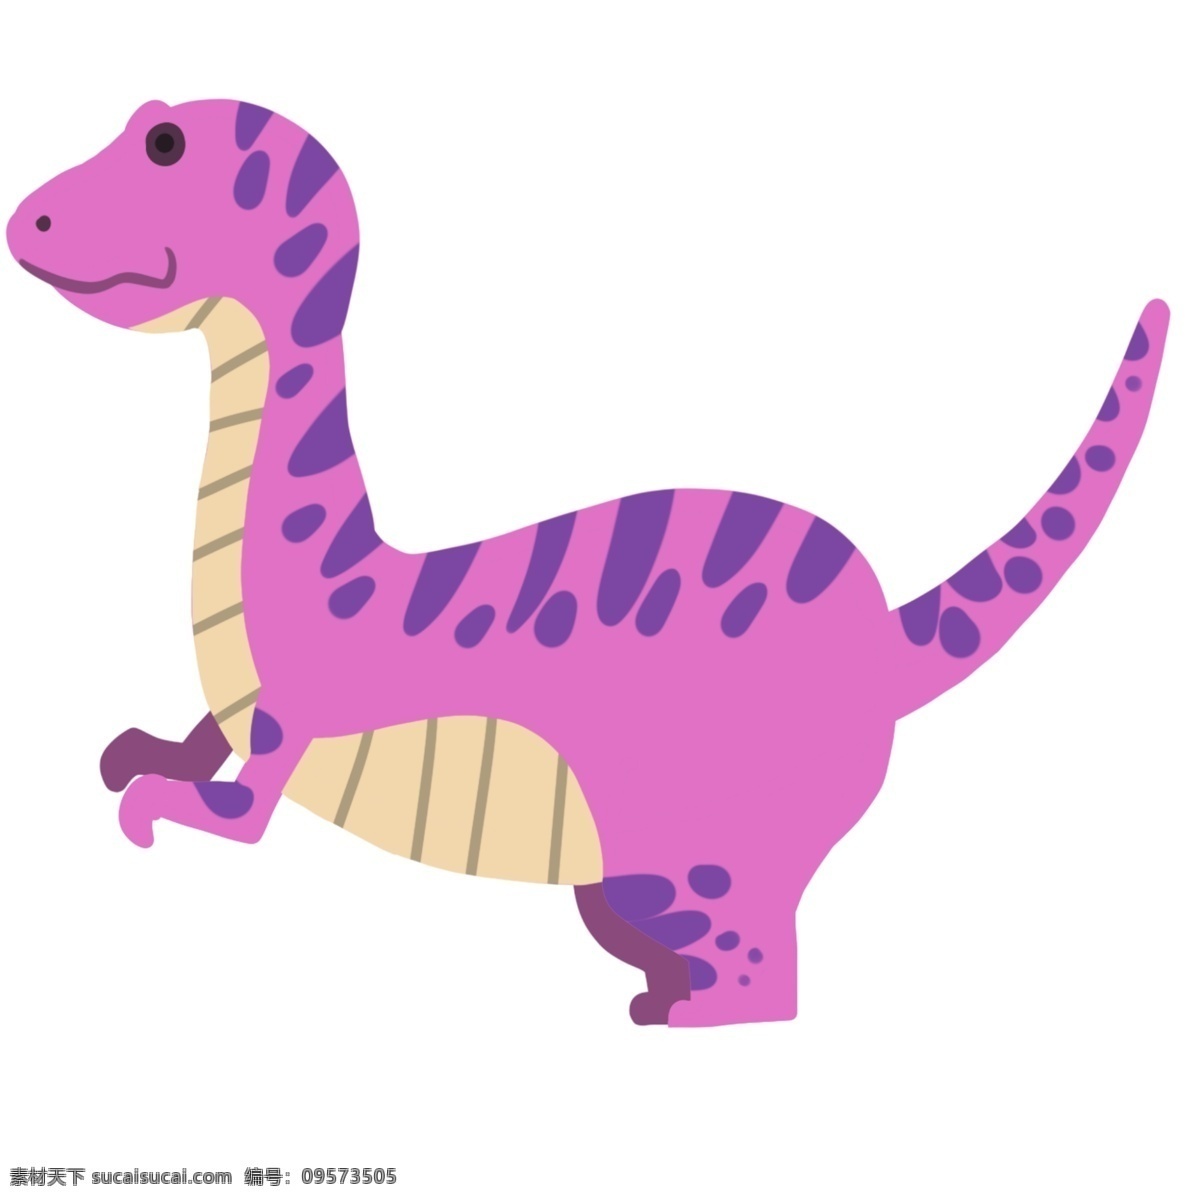 紫色 玩具 恐龙 插画 紫色小恐龙 彩色小恐龙 玩具恐龙插画 动物恐龙 野生动物 恐龙插画 玩具恐龙